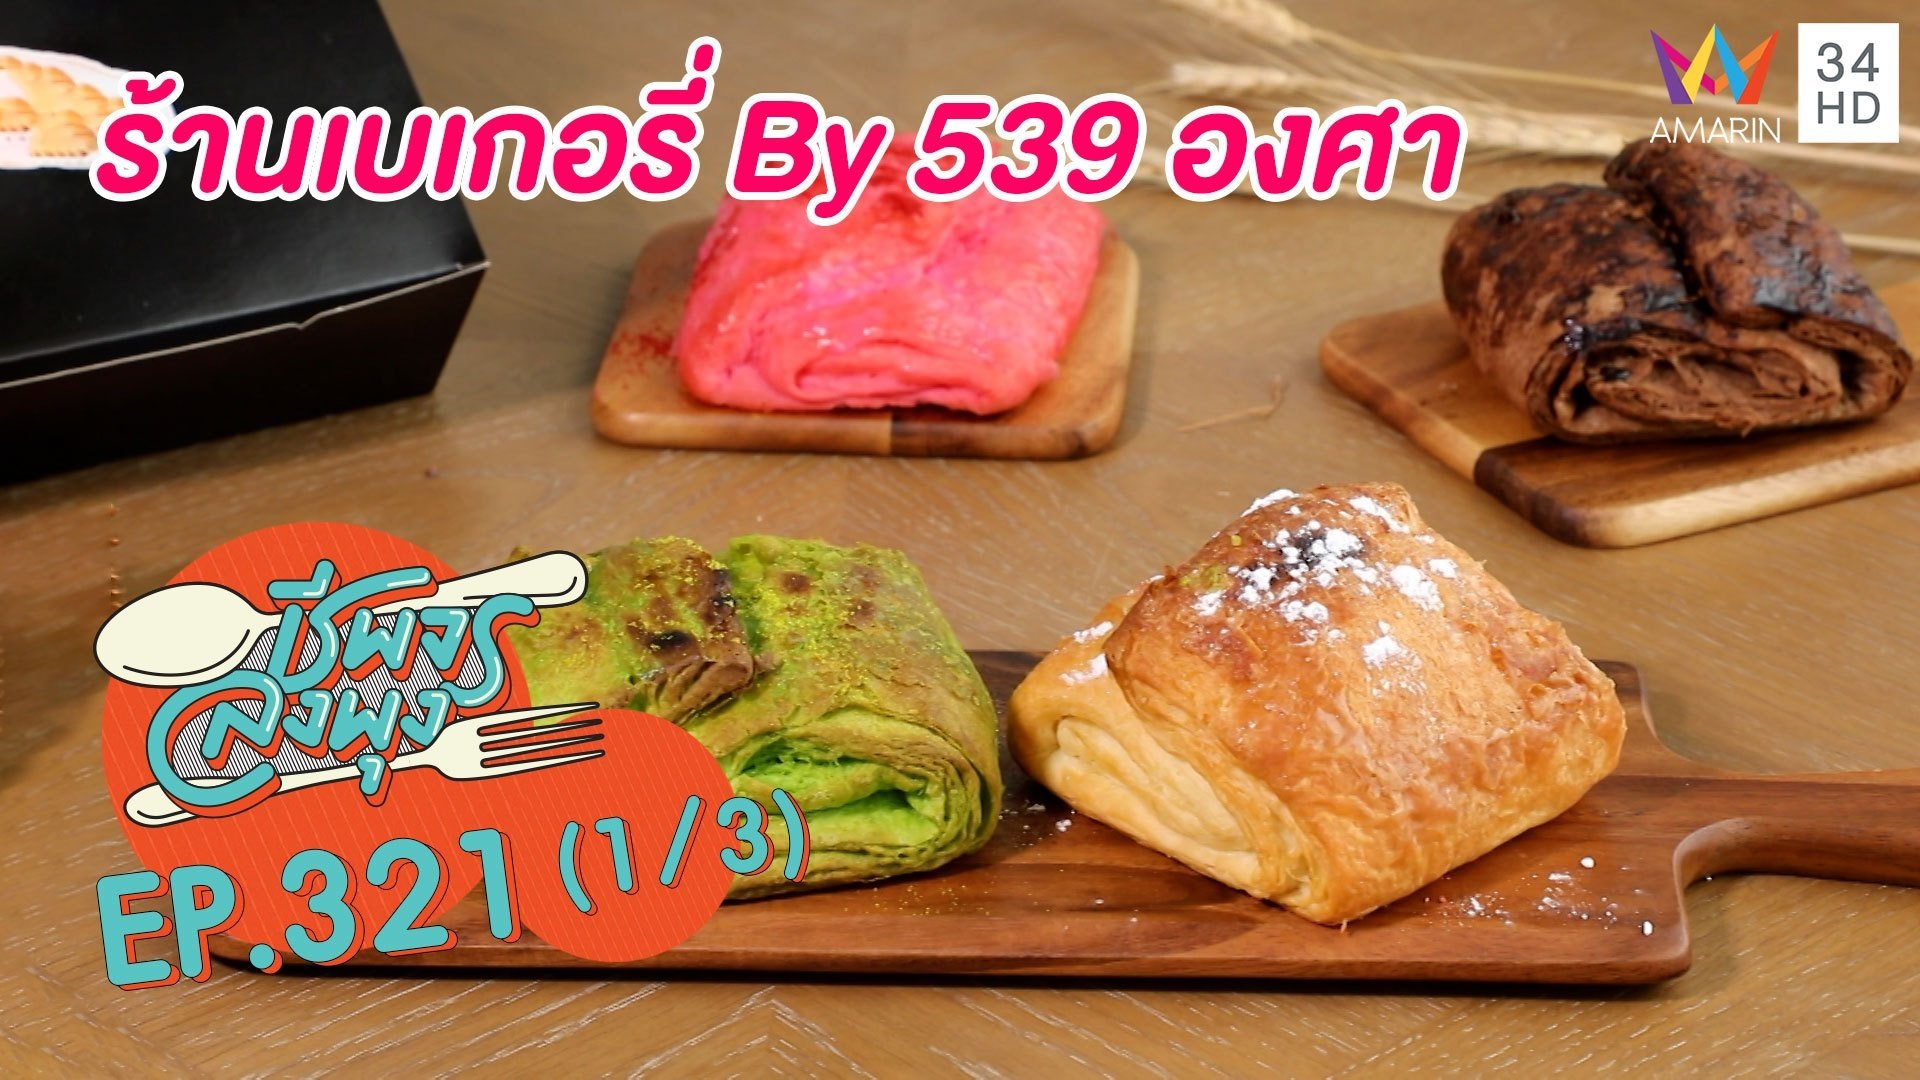 ลิ้มรสขนมปังนุ่ม-แน่น @ร้านเบเกอรี่ By 539 องศา | ชีพจรลงพุง | 4 ก.ย. 64 (1/3) | AMARIN TVHD34